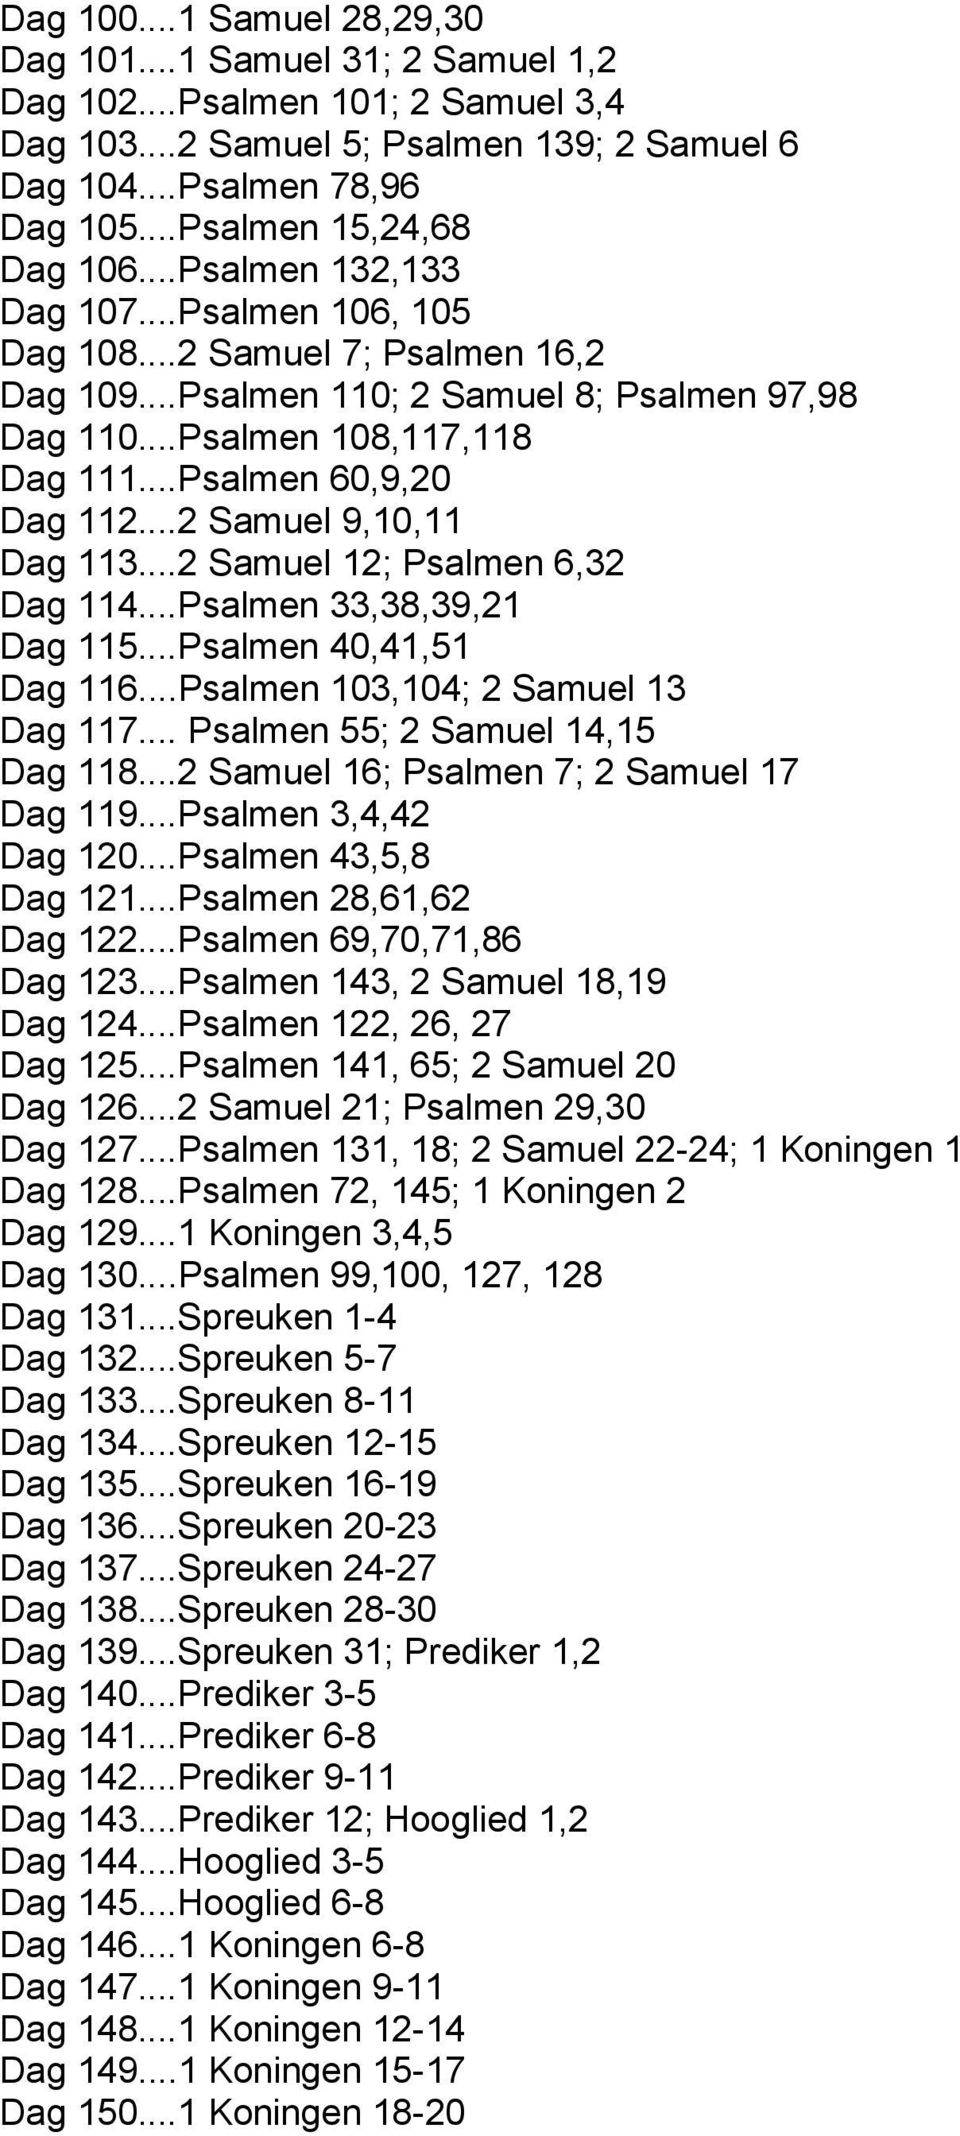 ..Psalmen 60,9,20 Dag 112...2 Samuel 9,10,11 Dag 113...2 Samuel 12; Psalmen 6,32 Dag 114...Psalmen 33,38,39,21 Dag 115...Psalmen 40,41,51 Dag 116...Psalmen 103,104; 2 Samuel 13 Dag 117.